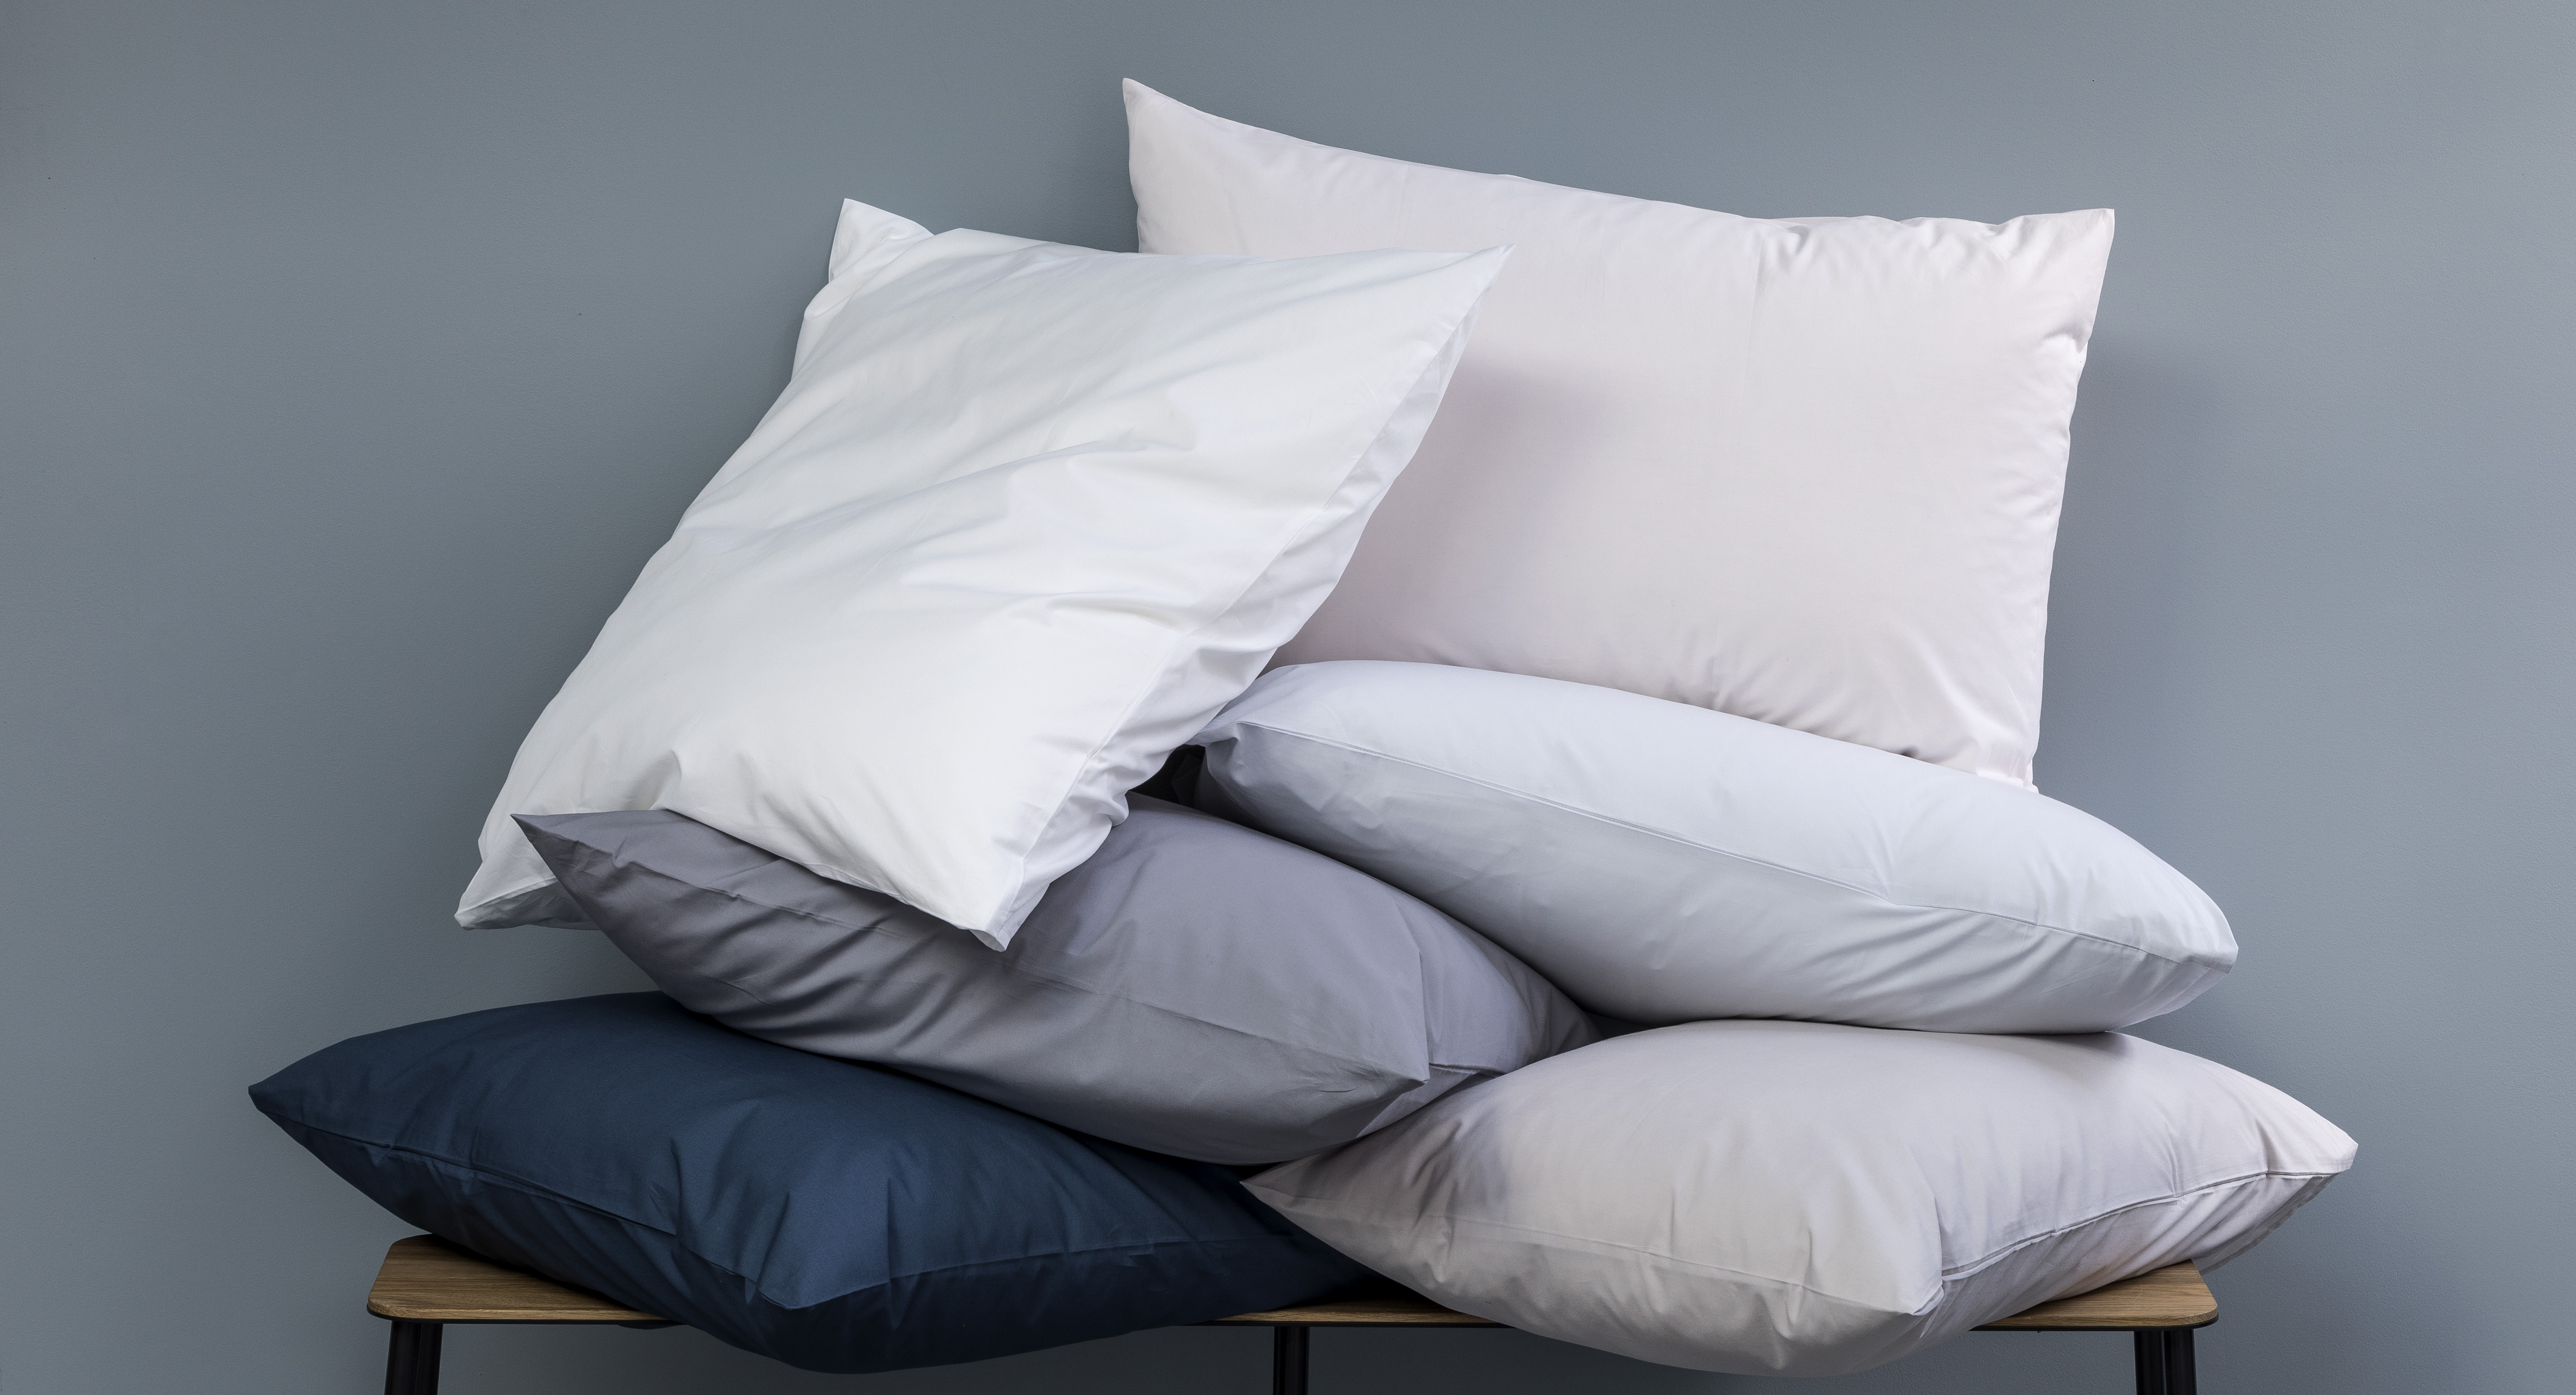 comment mieux dormir exemple parure de lit linge taie oreiller écologique durable